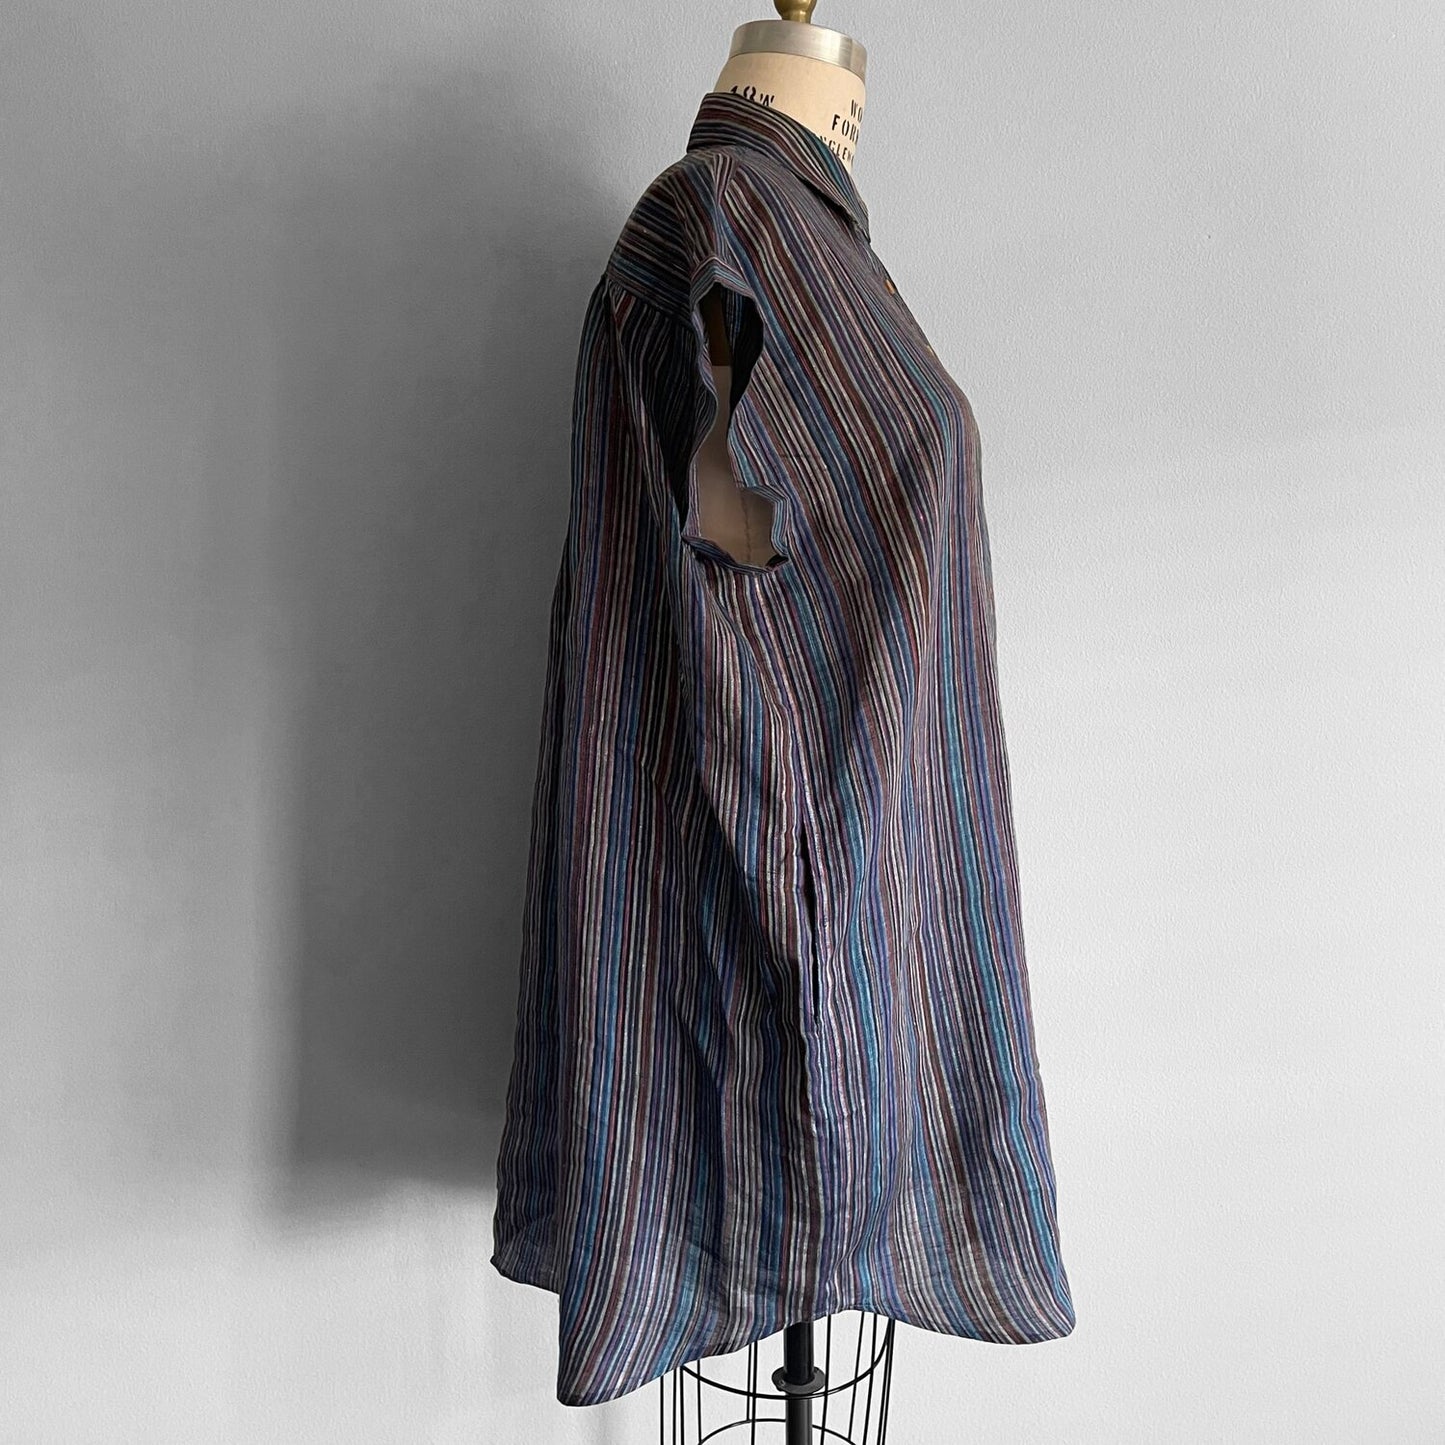 Willamette BLUEBERRY RAINBOW SHIRT DRESS